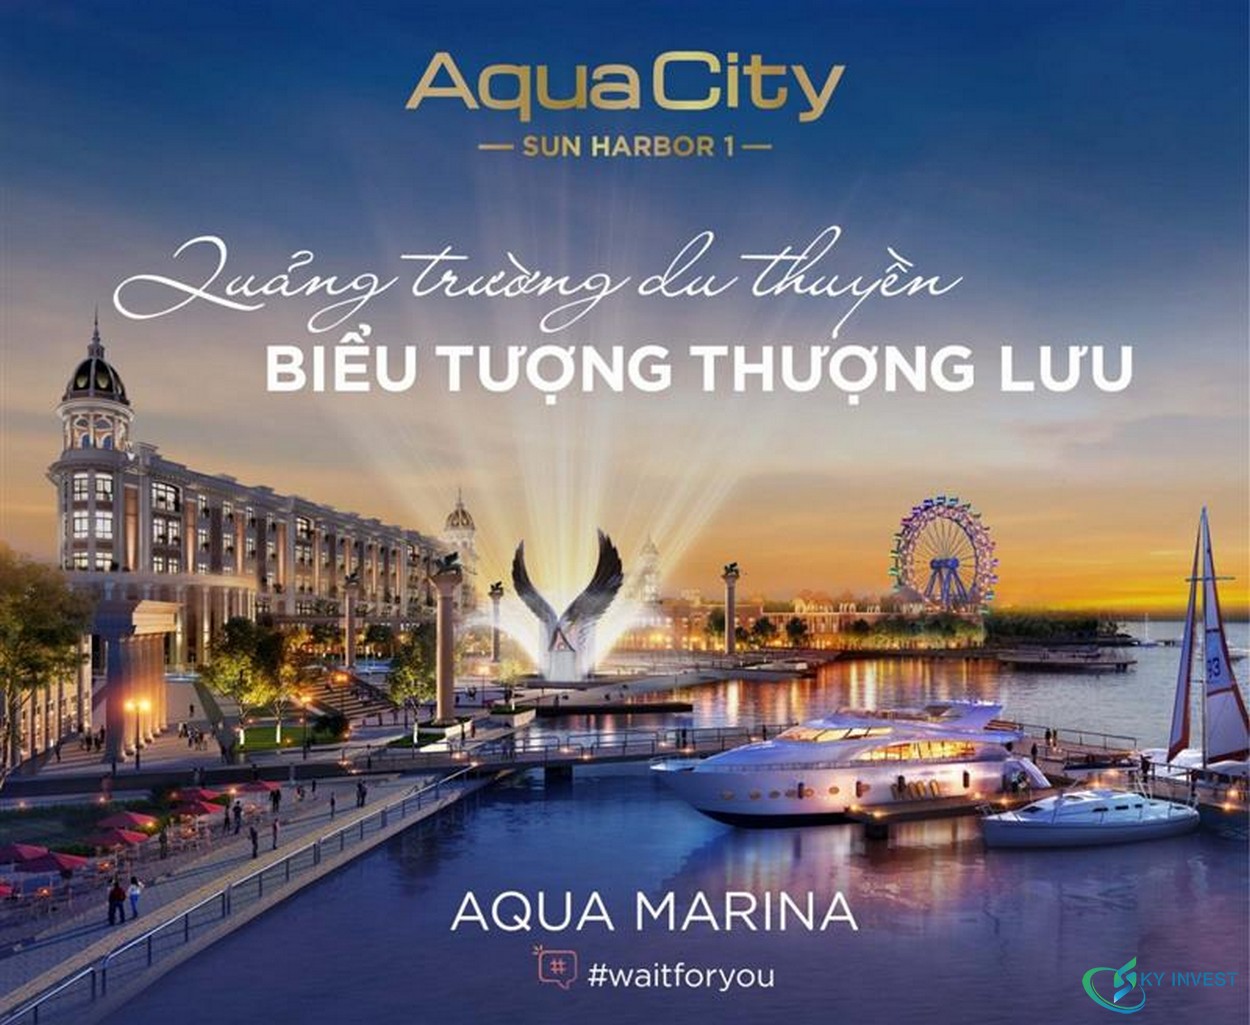 Phân khu Sun Harbor 1 nằm trong KĐT Aqua City Đồng Nai với chủ đầu tư là tập đoàn Novaland Group